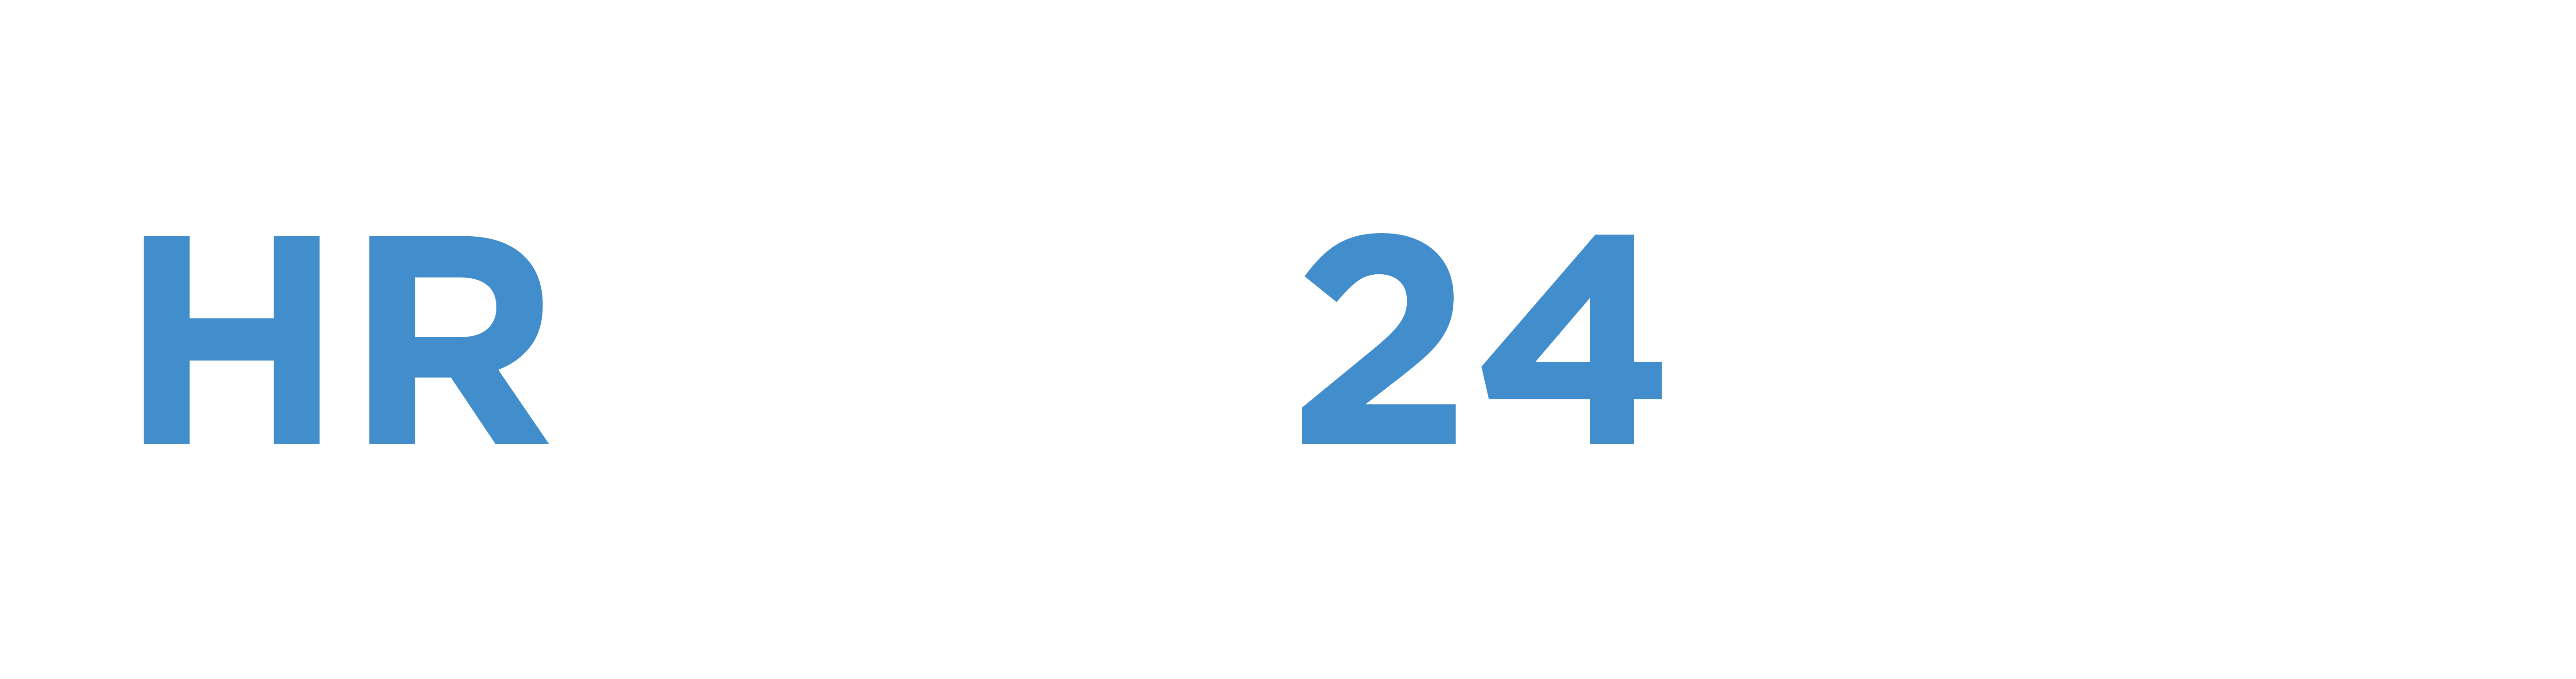 HRTech247